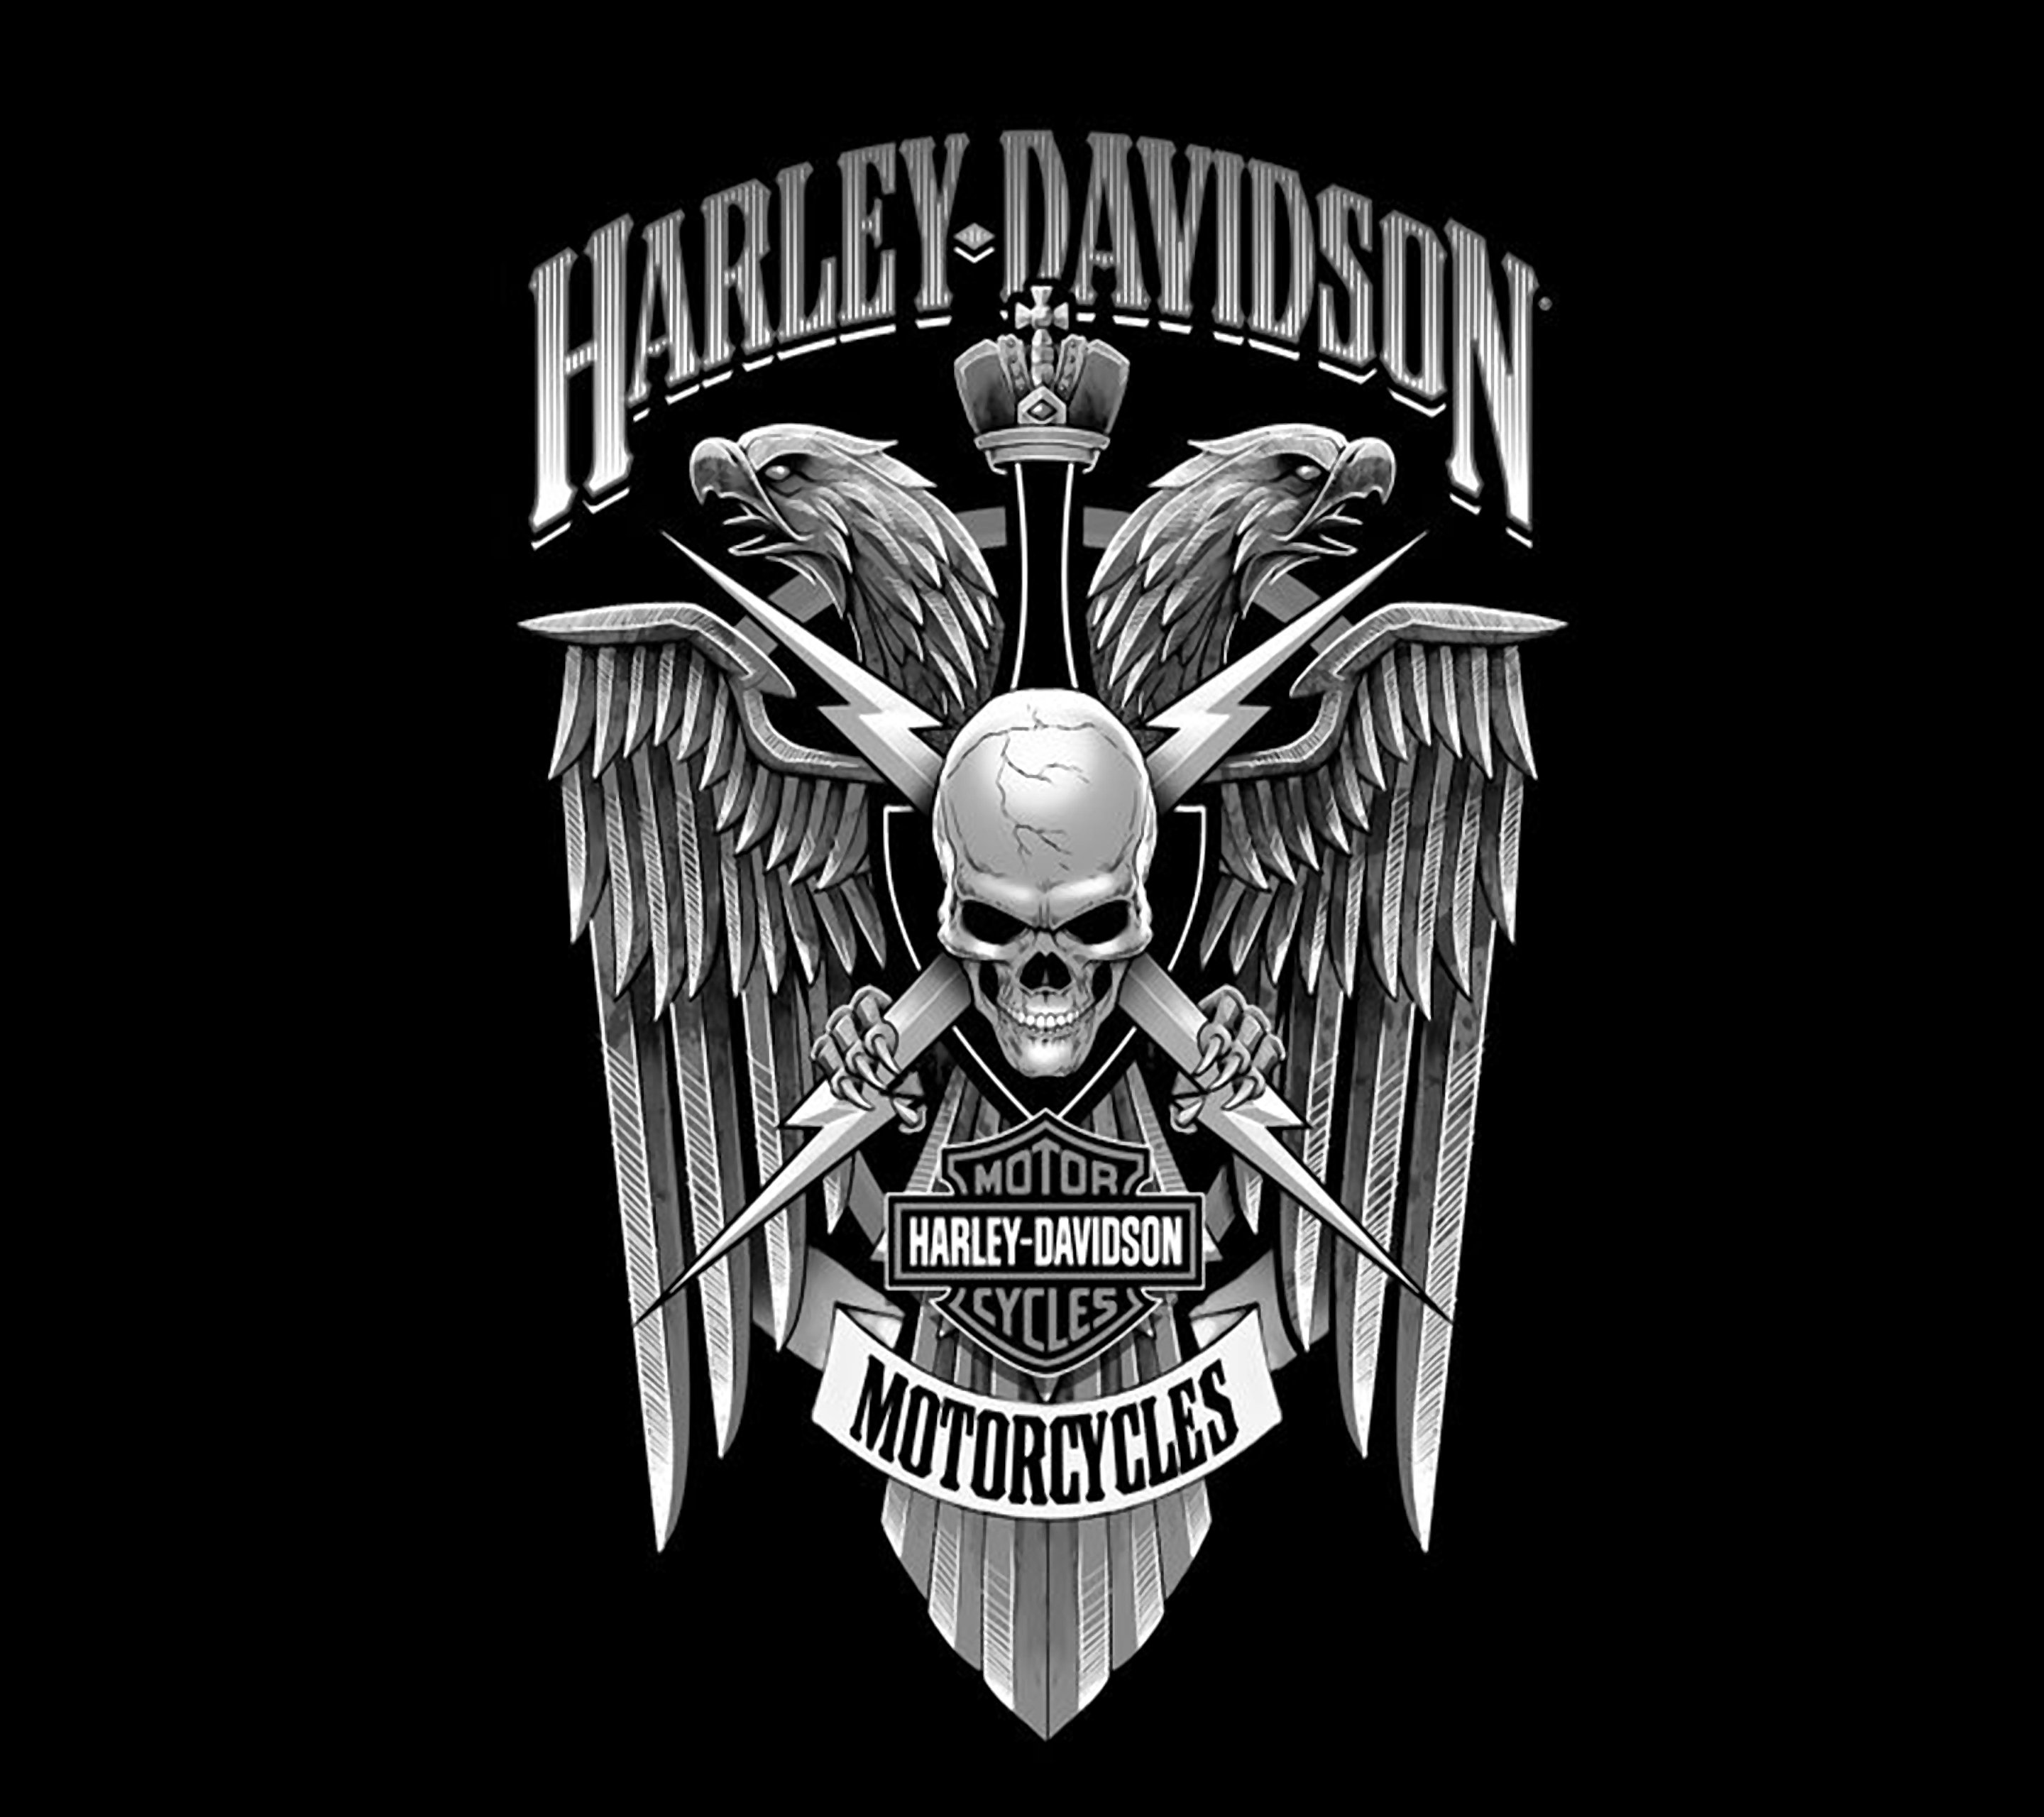 New Harley Davidson Wallpaper For Windows #BEST-680 • Awall